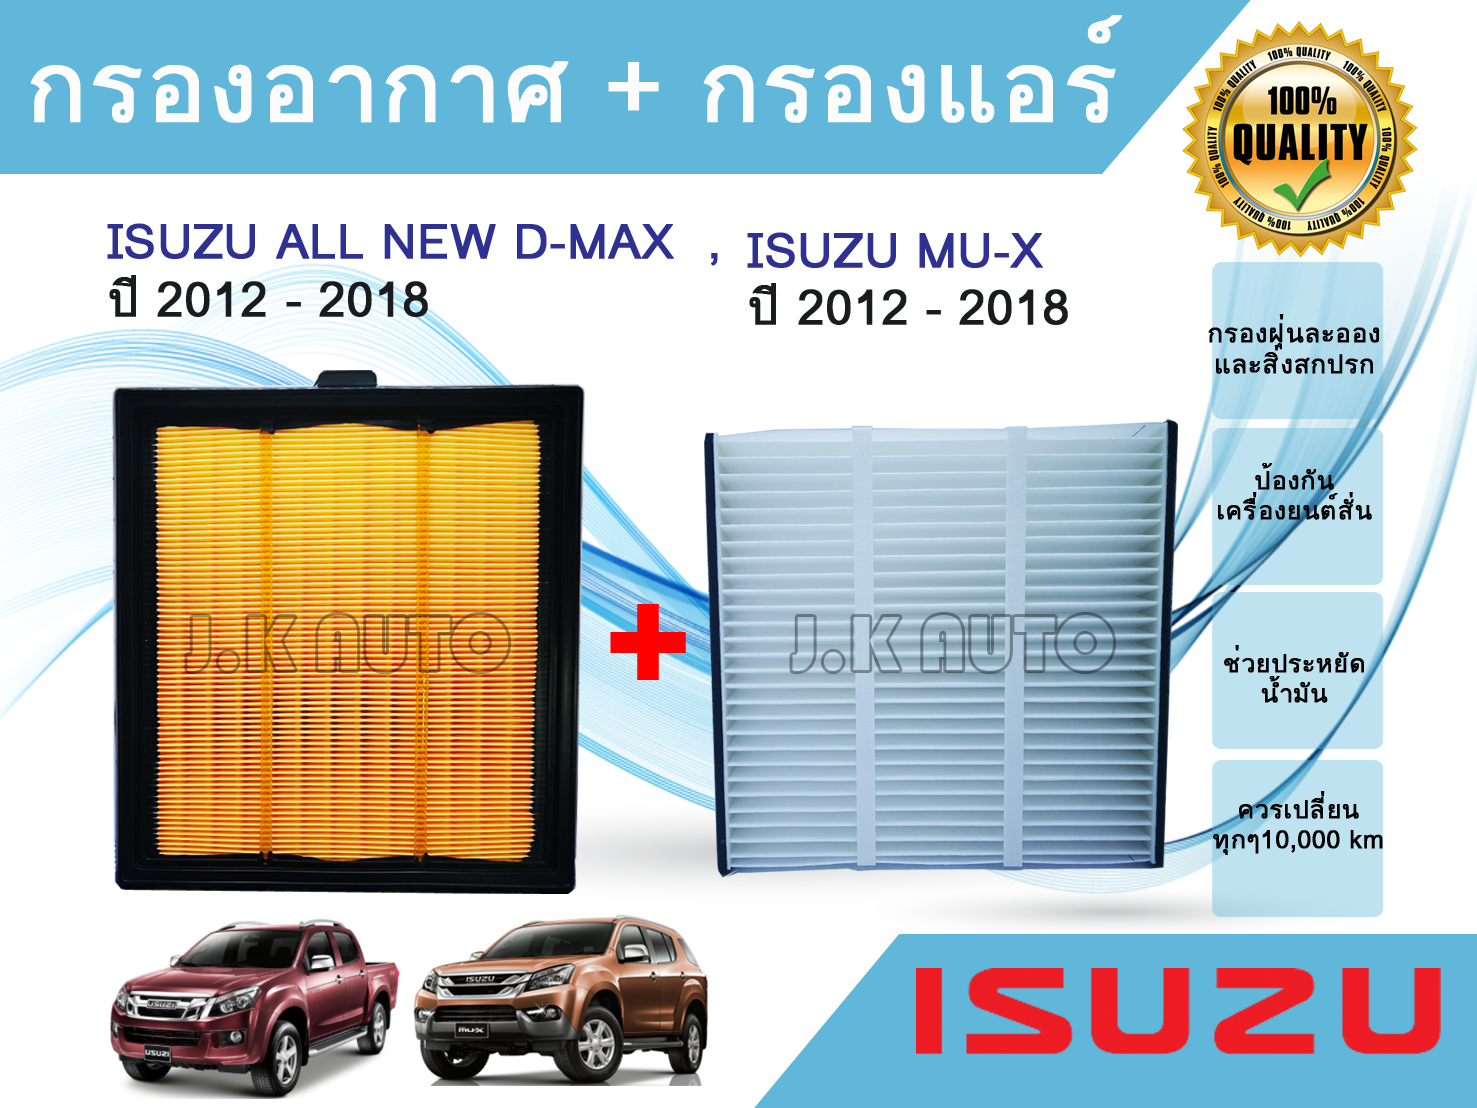 ซื้อคู่ถูกกว่า!!! ไส้กรองอากาศ + ไส้กรองแอร์ อีซูซุดีแมคซ์ มิว-เอ็กซ์ All NEW Isuzu D-max Mu-X 1.9/2.5 ปี 2012-2018